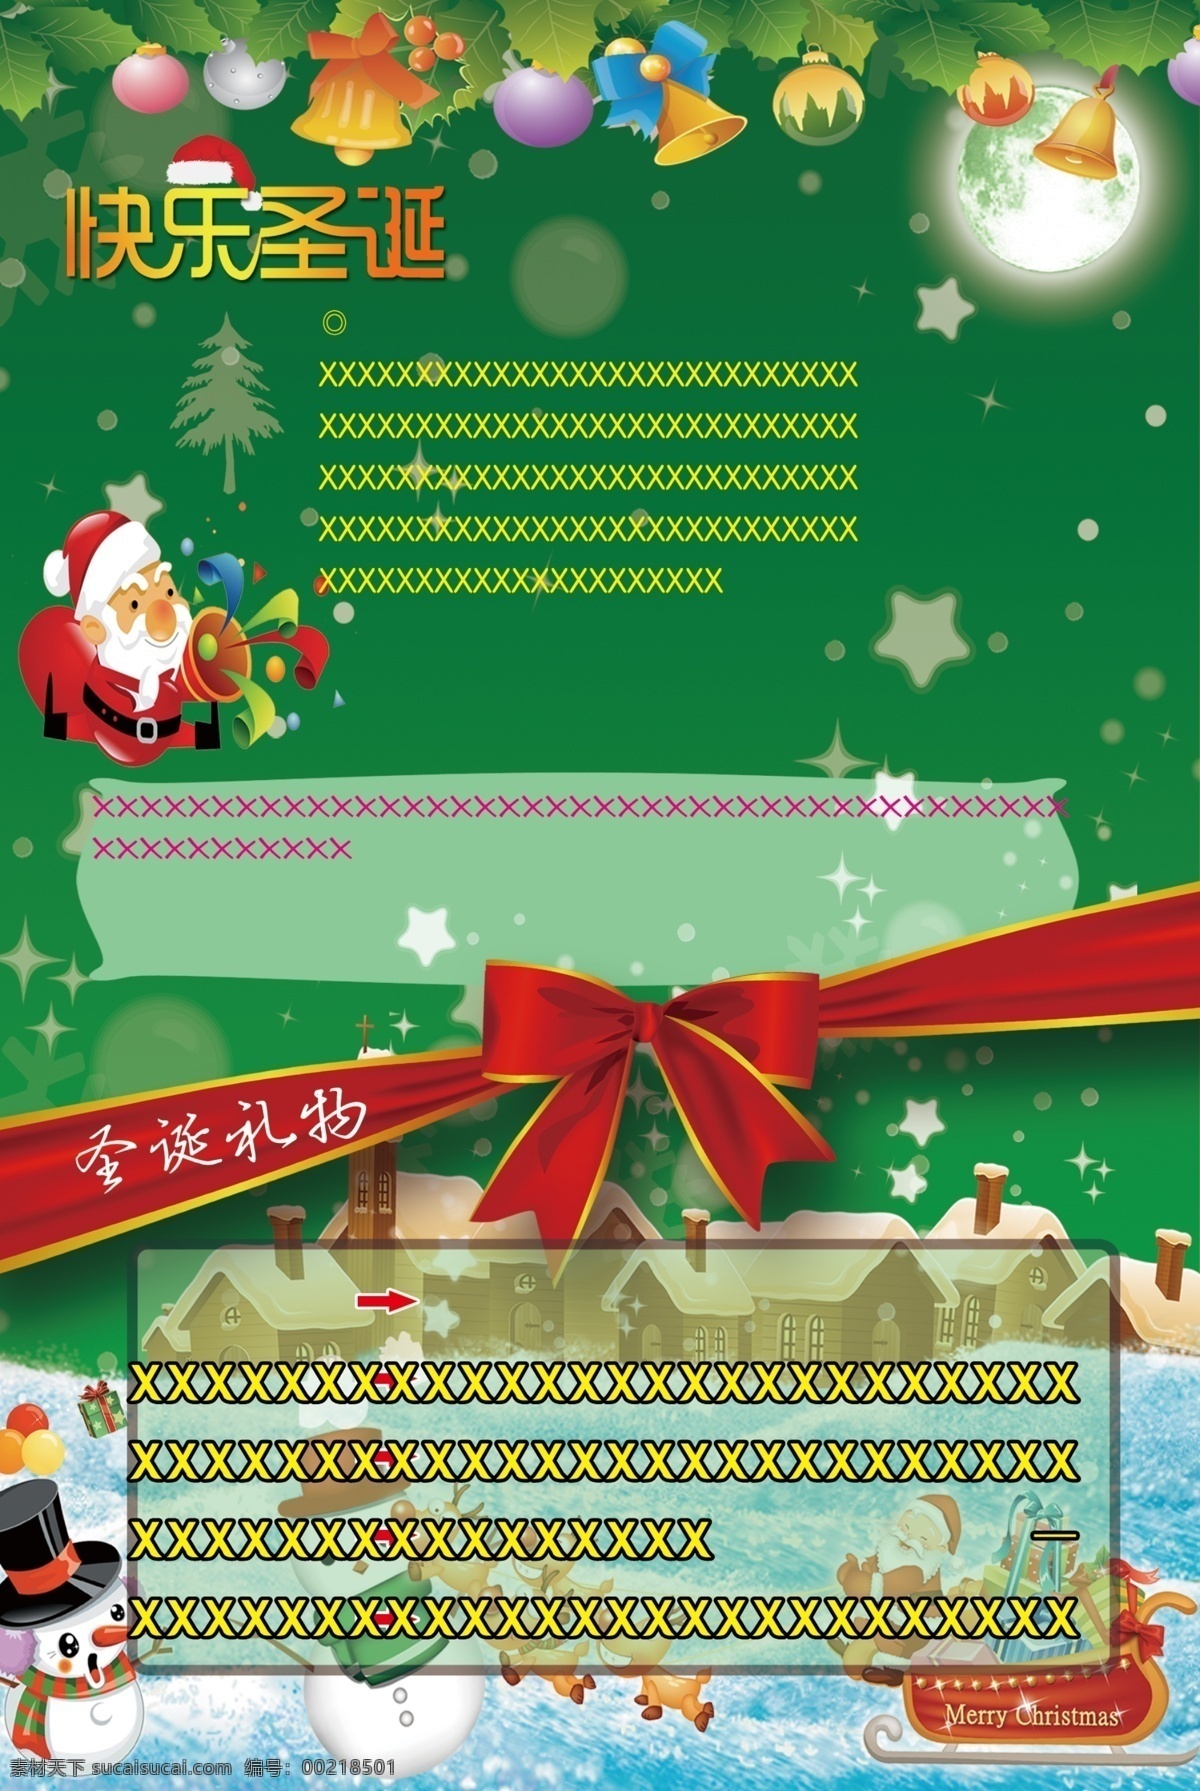 2014圣诞 2014 圣诞 分层 圣诞素材 模板下载 源文件 圣 诞 节日素材 2015羊年